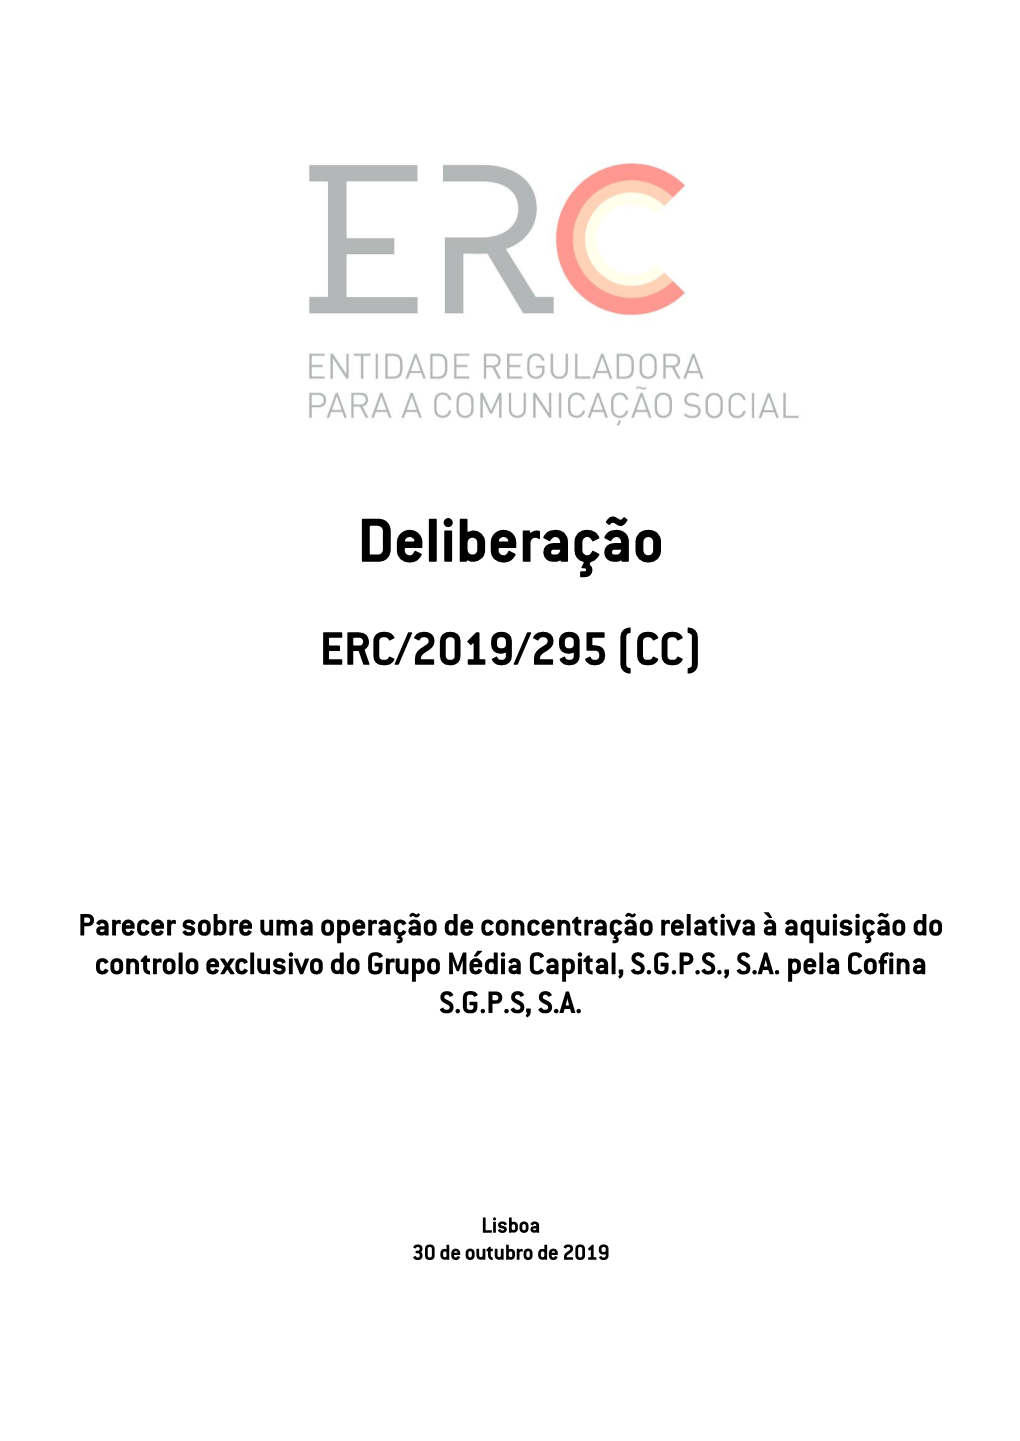 Erc/2019/295 (Cc)